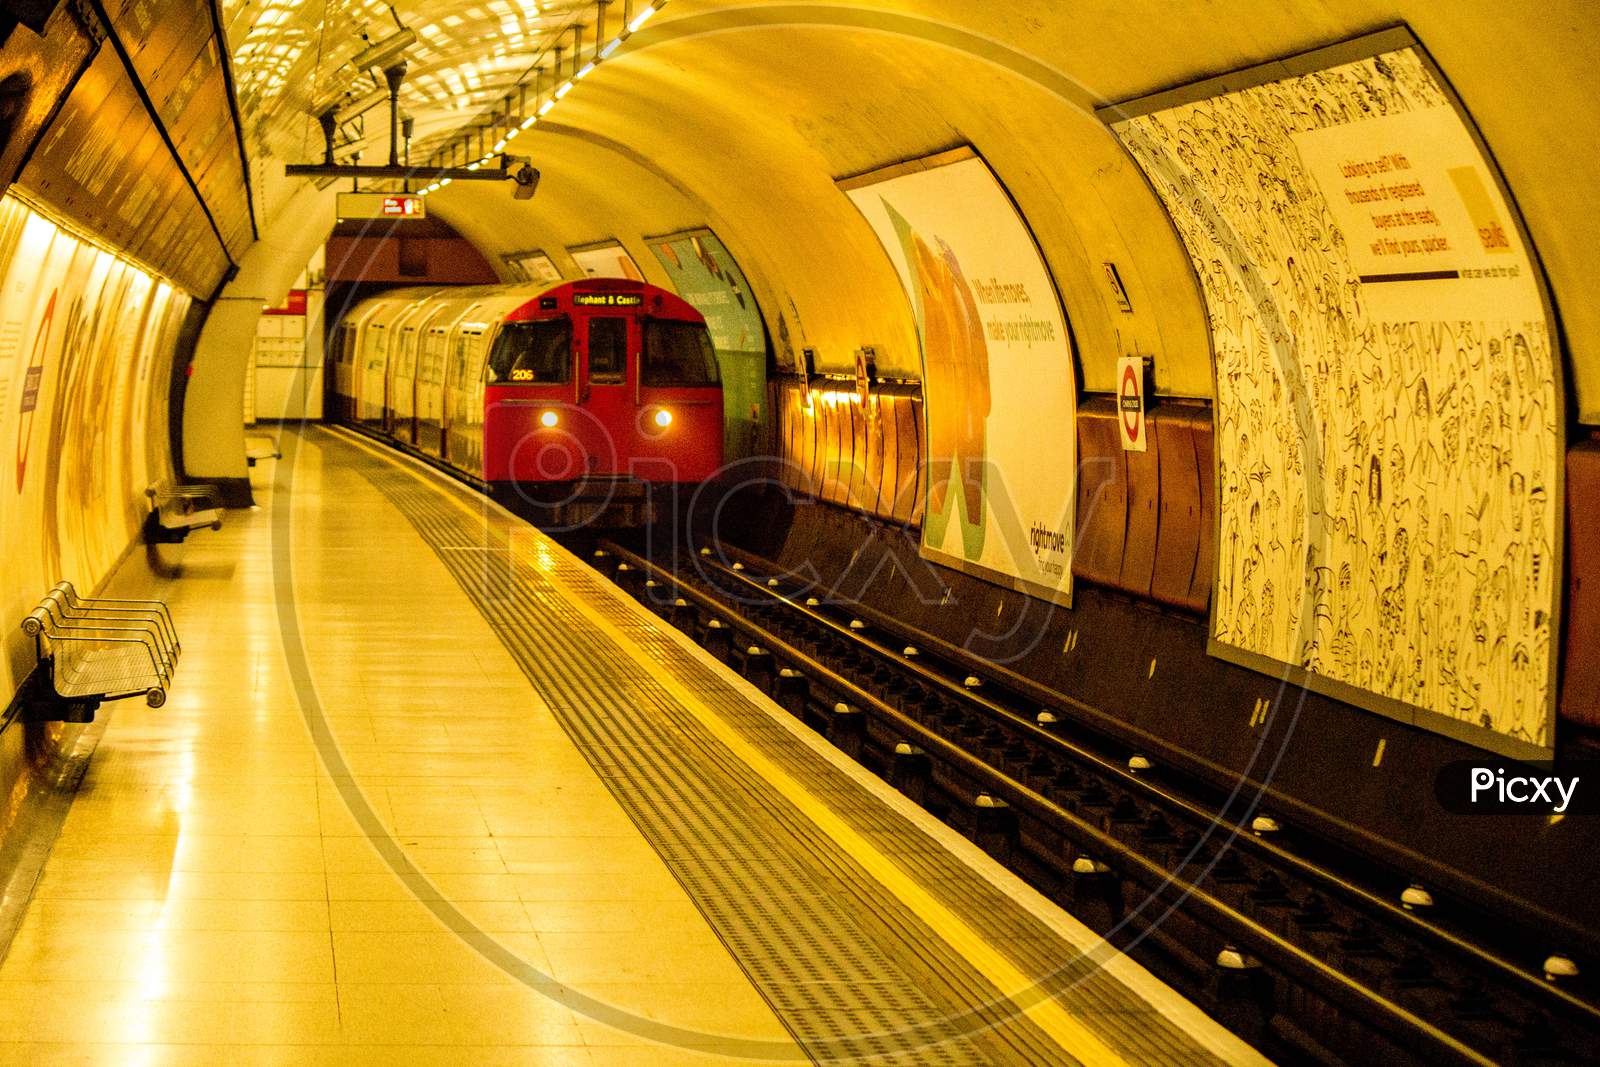 Underground Platform View